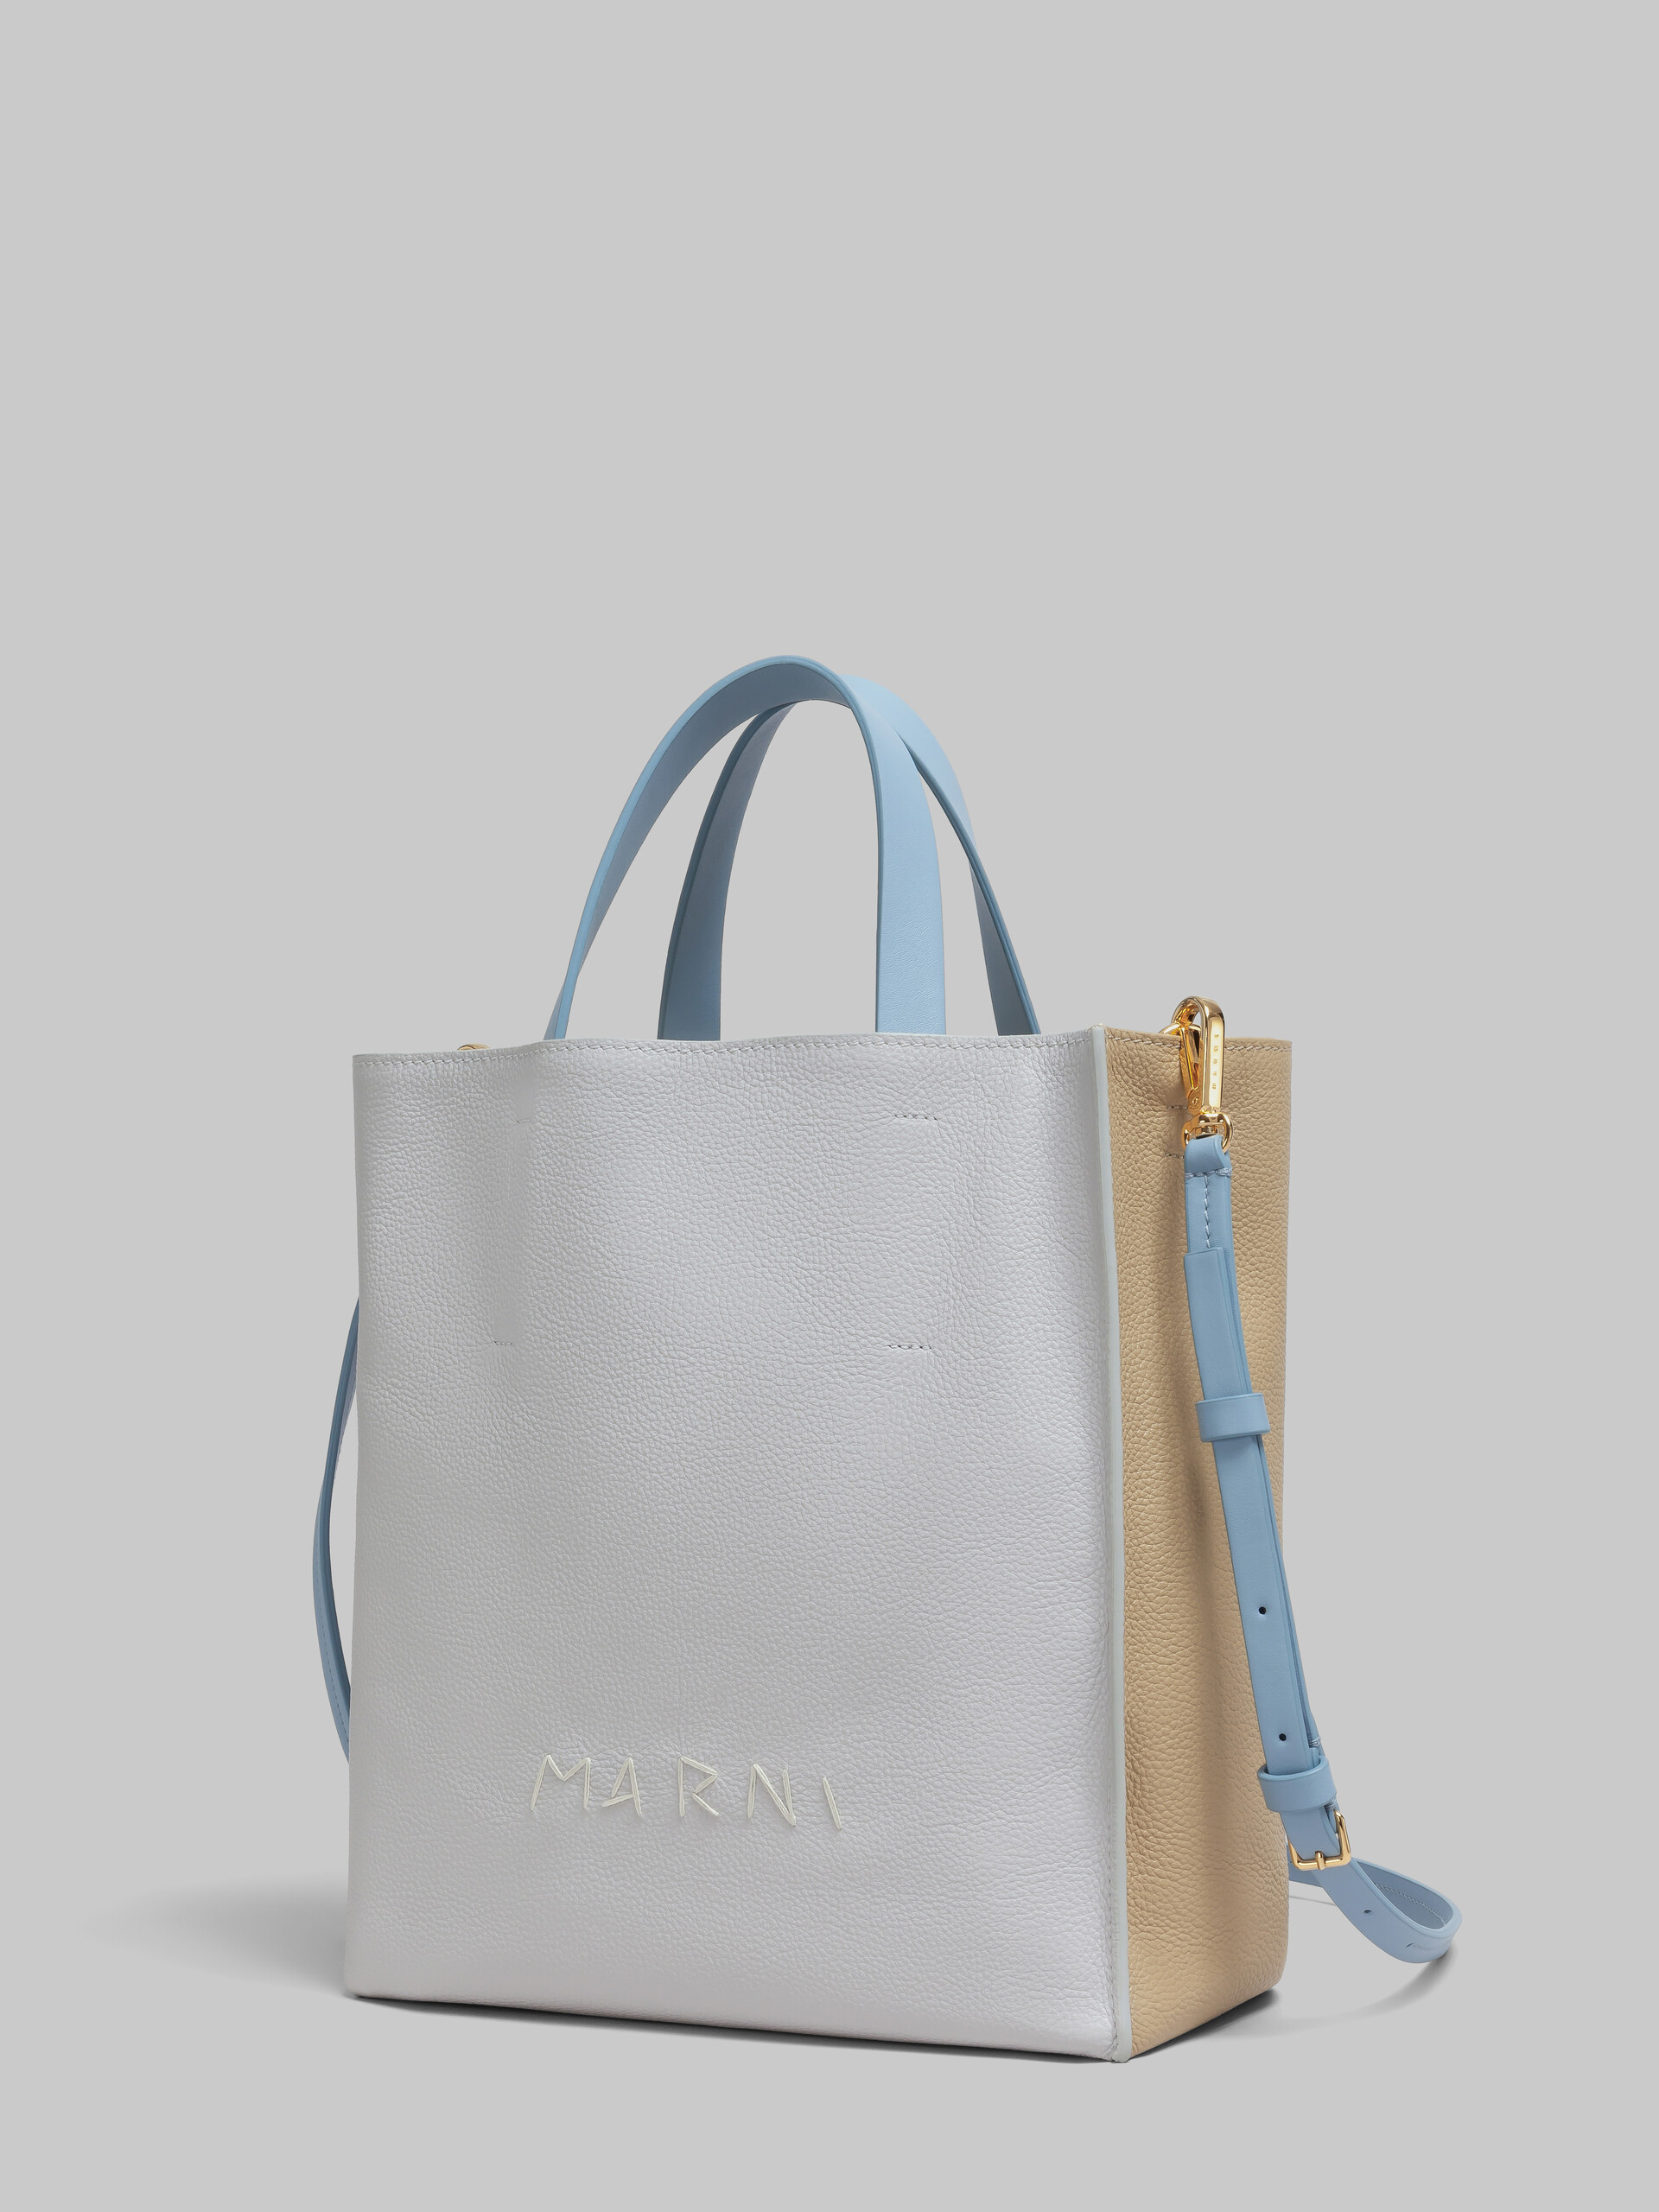 Mini-sac Museo Soft en cuir ivoire et marron avec effet raccommodé Marni - Sacs cabas - Image 4